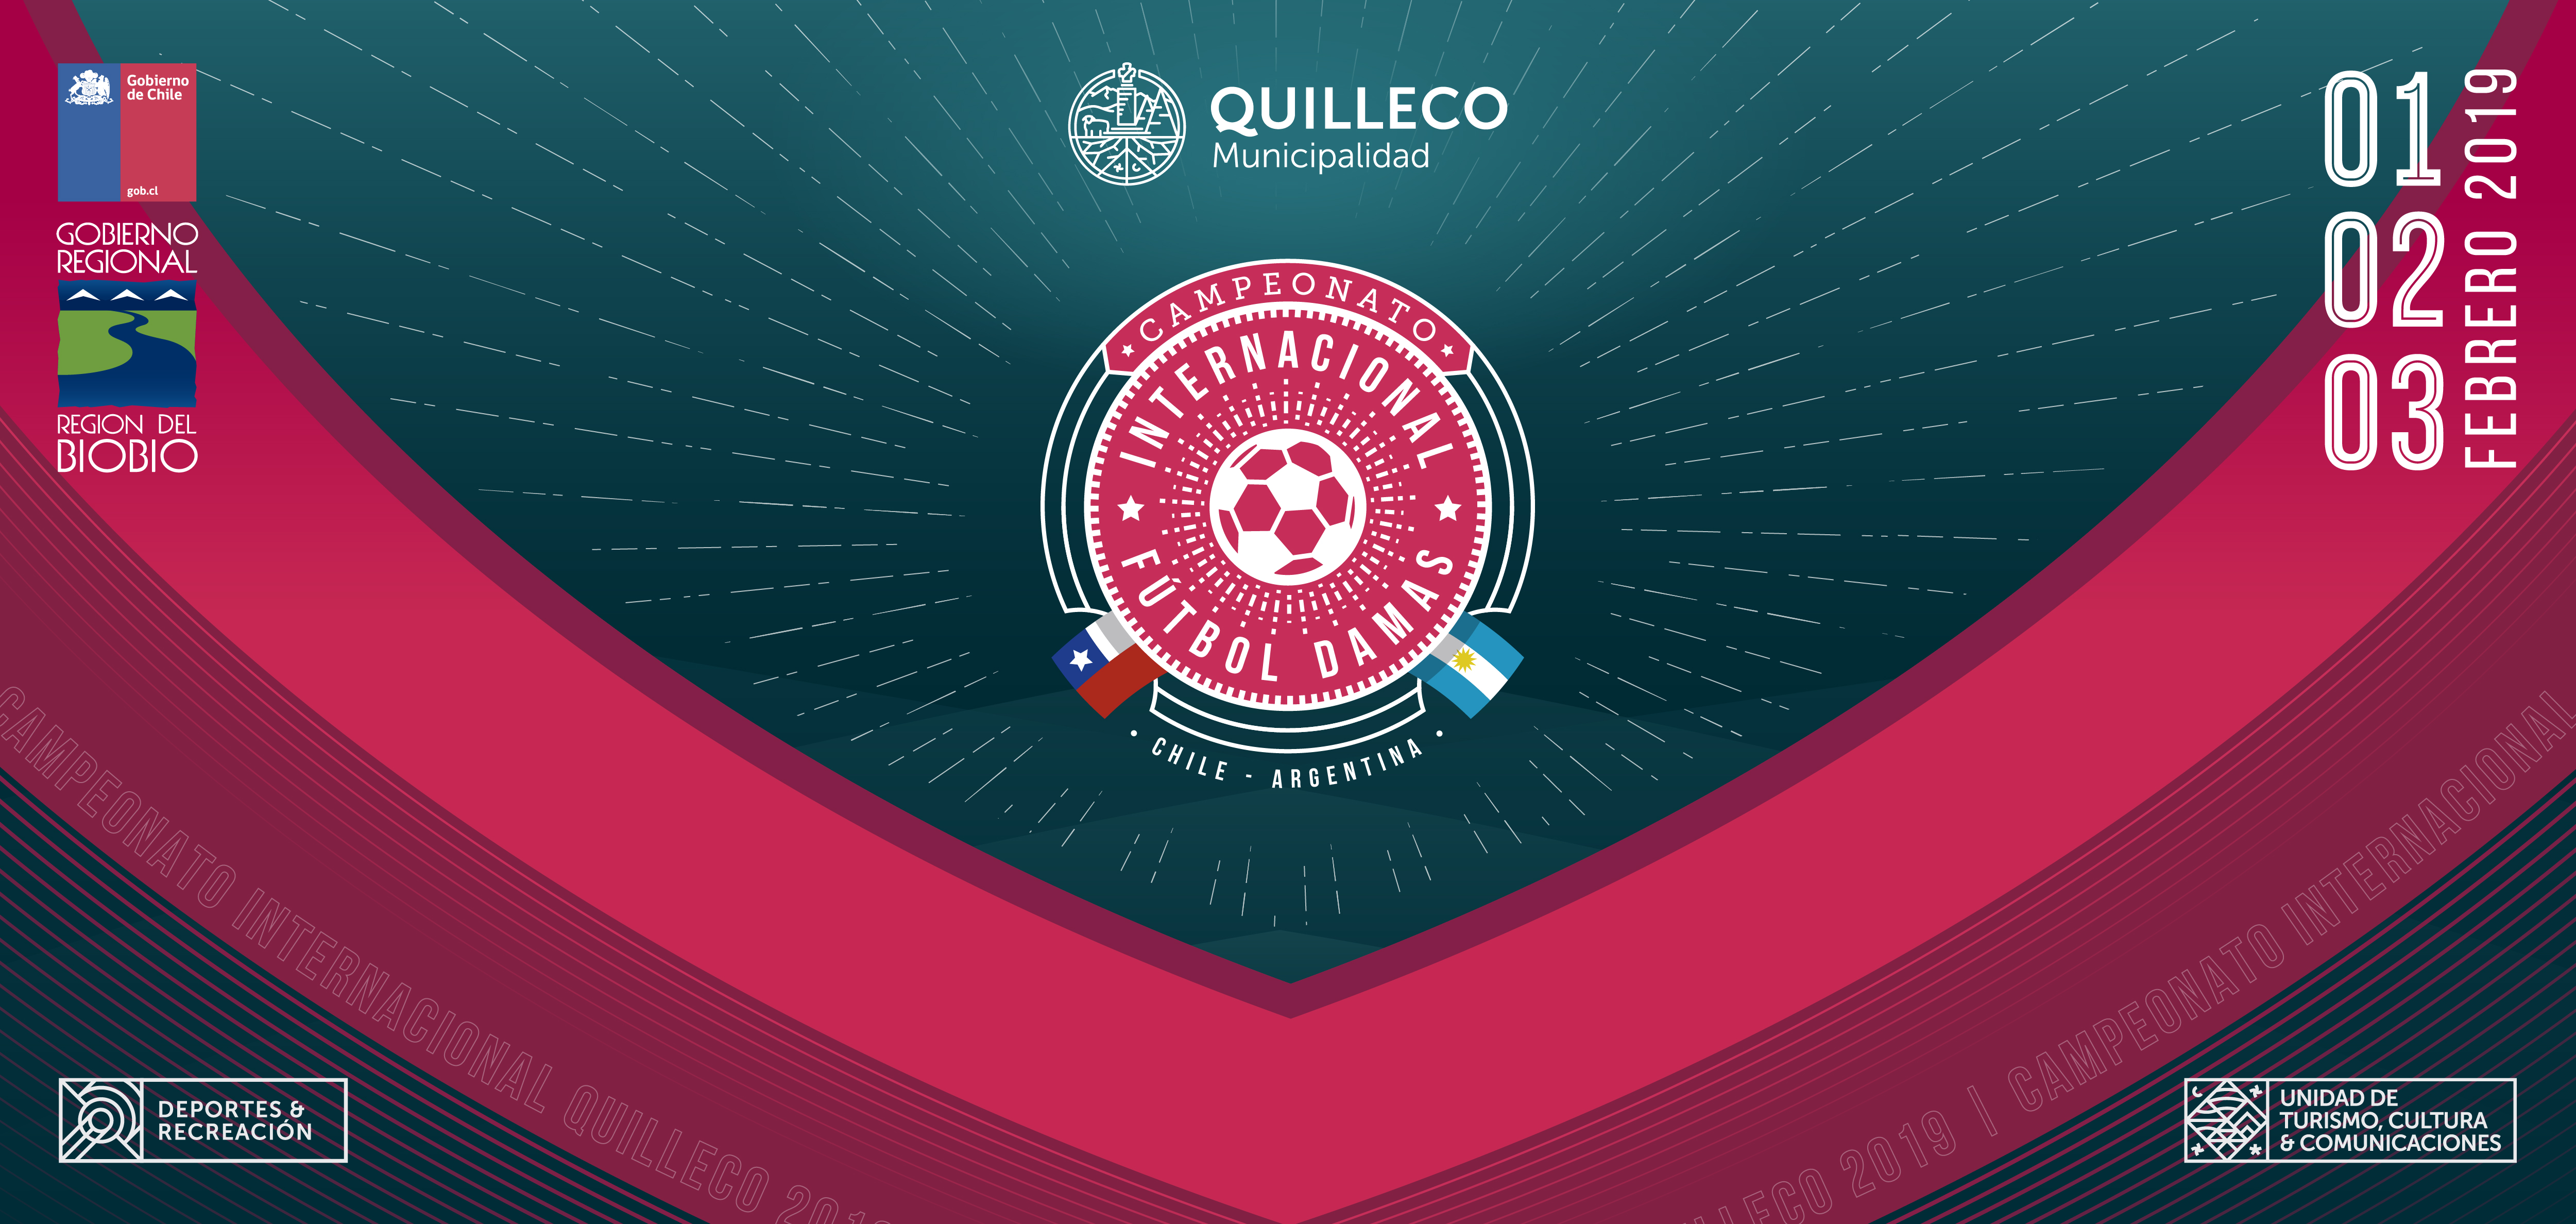 Primera Versión de la “Copa Internacional de Fútbol Femenino Bio Bío – Neuquén” se realizará  en la comuna de Quilleco